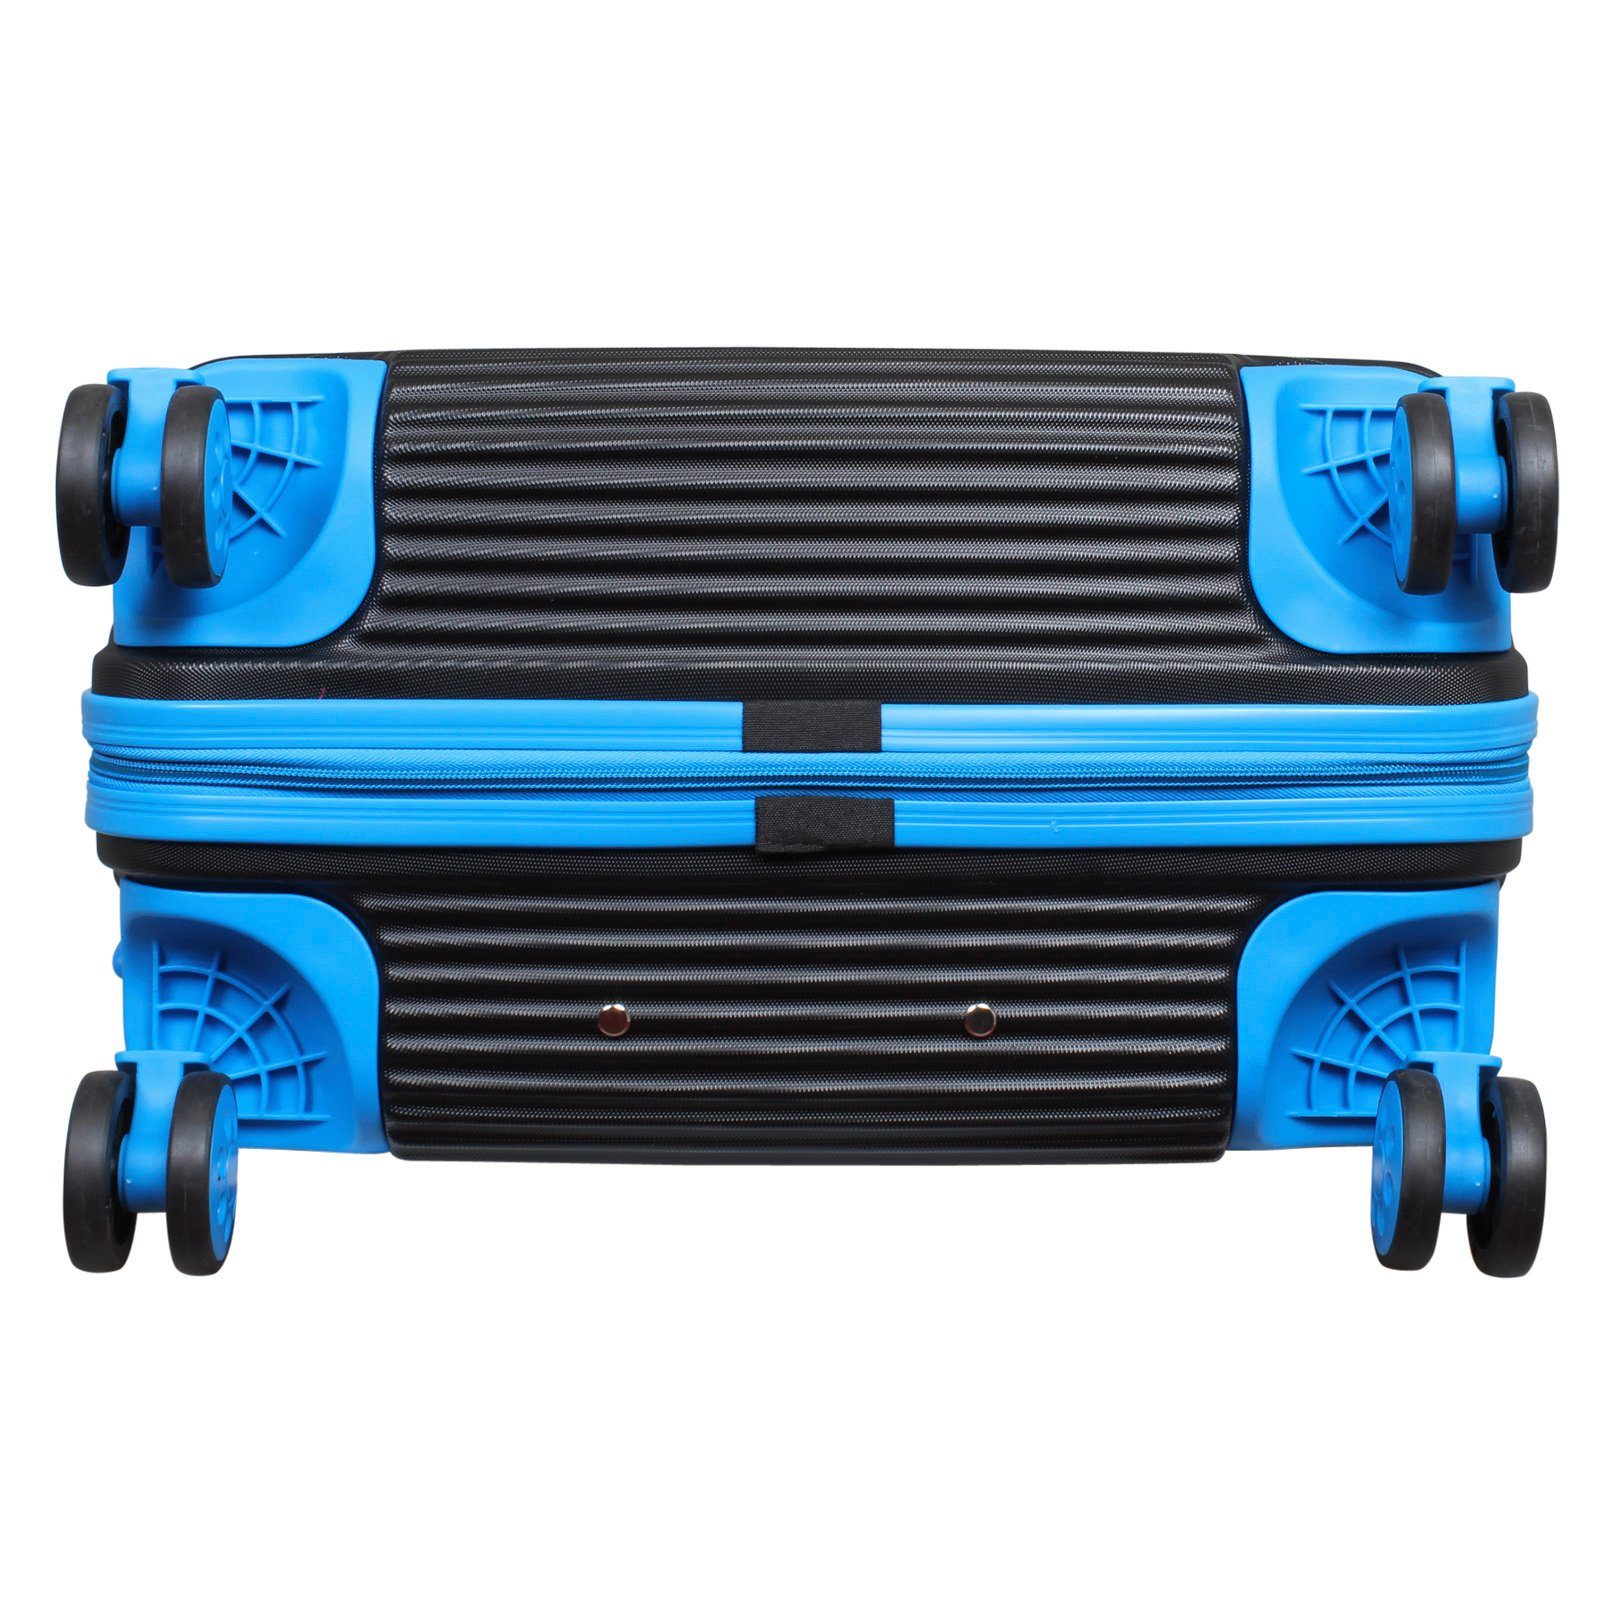 (ABS), schwarz-blau Santorin, 4 Kofferset 3 Zwillingsrollen, (Trolley, Trendyshop365 Tragegriffe, und Hartschale tlg., leicht 2 robust Rollen, Zahlenschloss,